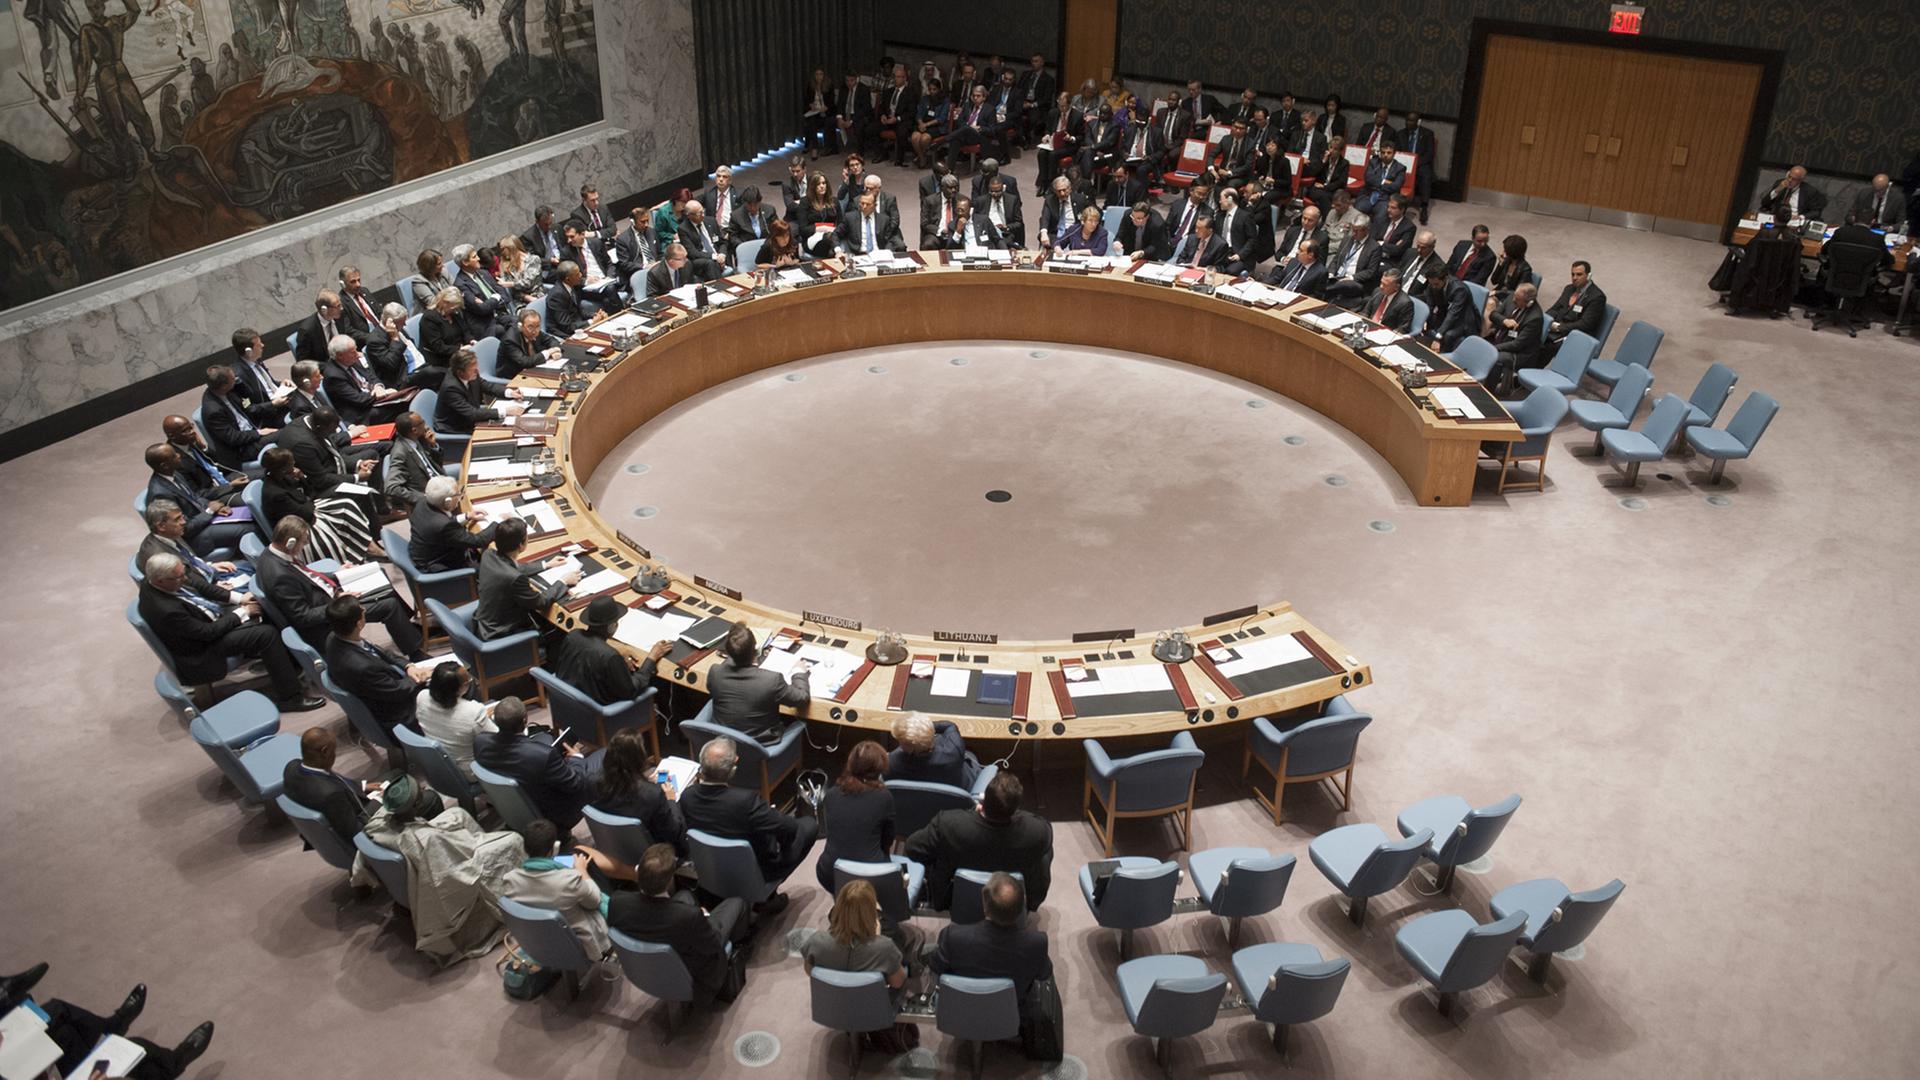 Der UNO-Sicherheitsrat in New York während einer Sitzung im September 2014.